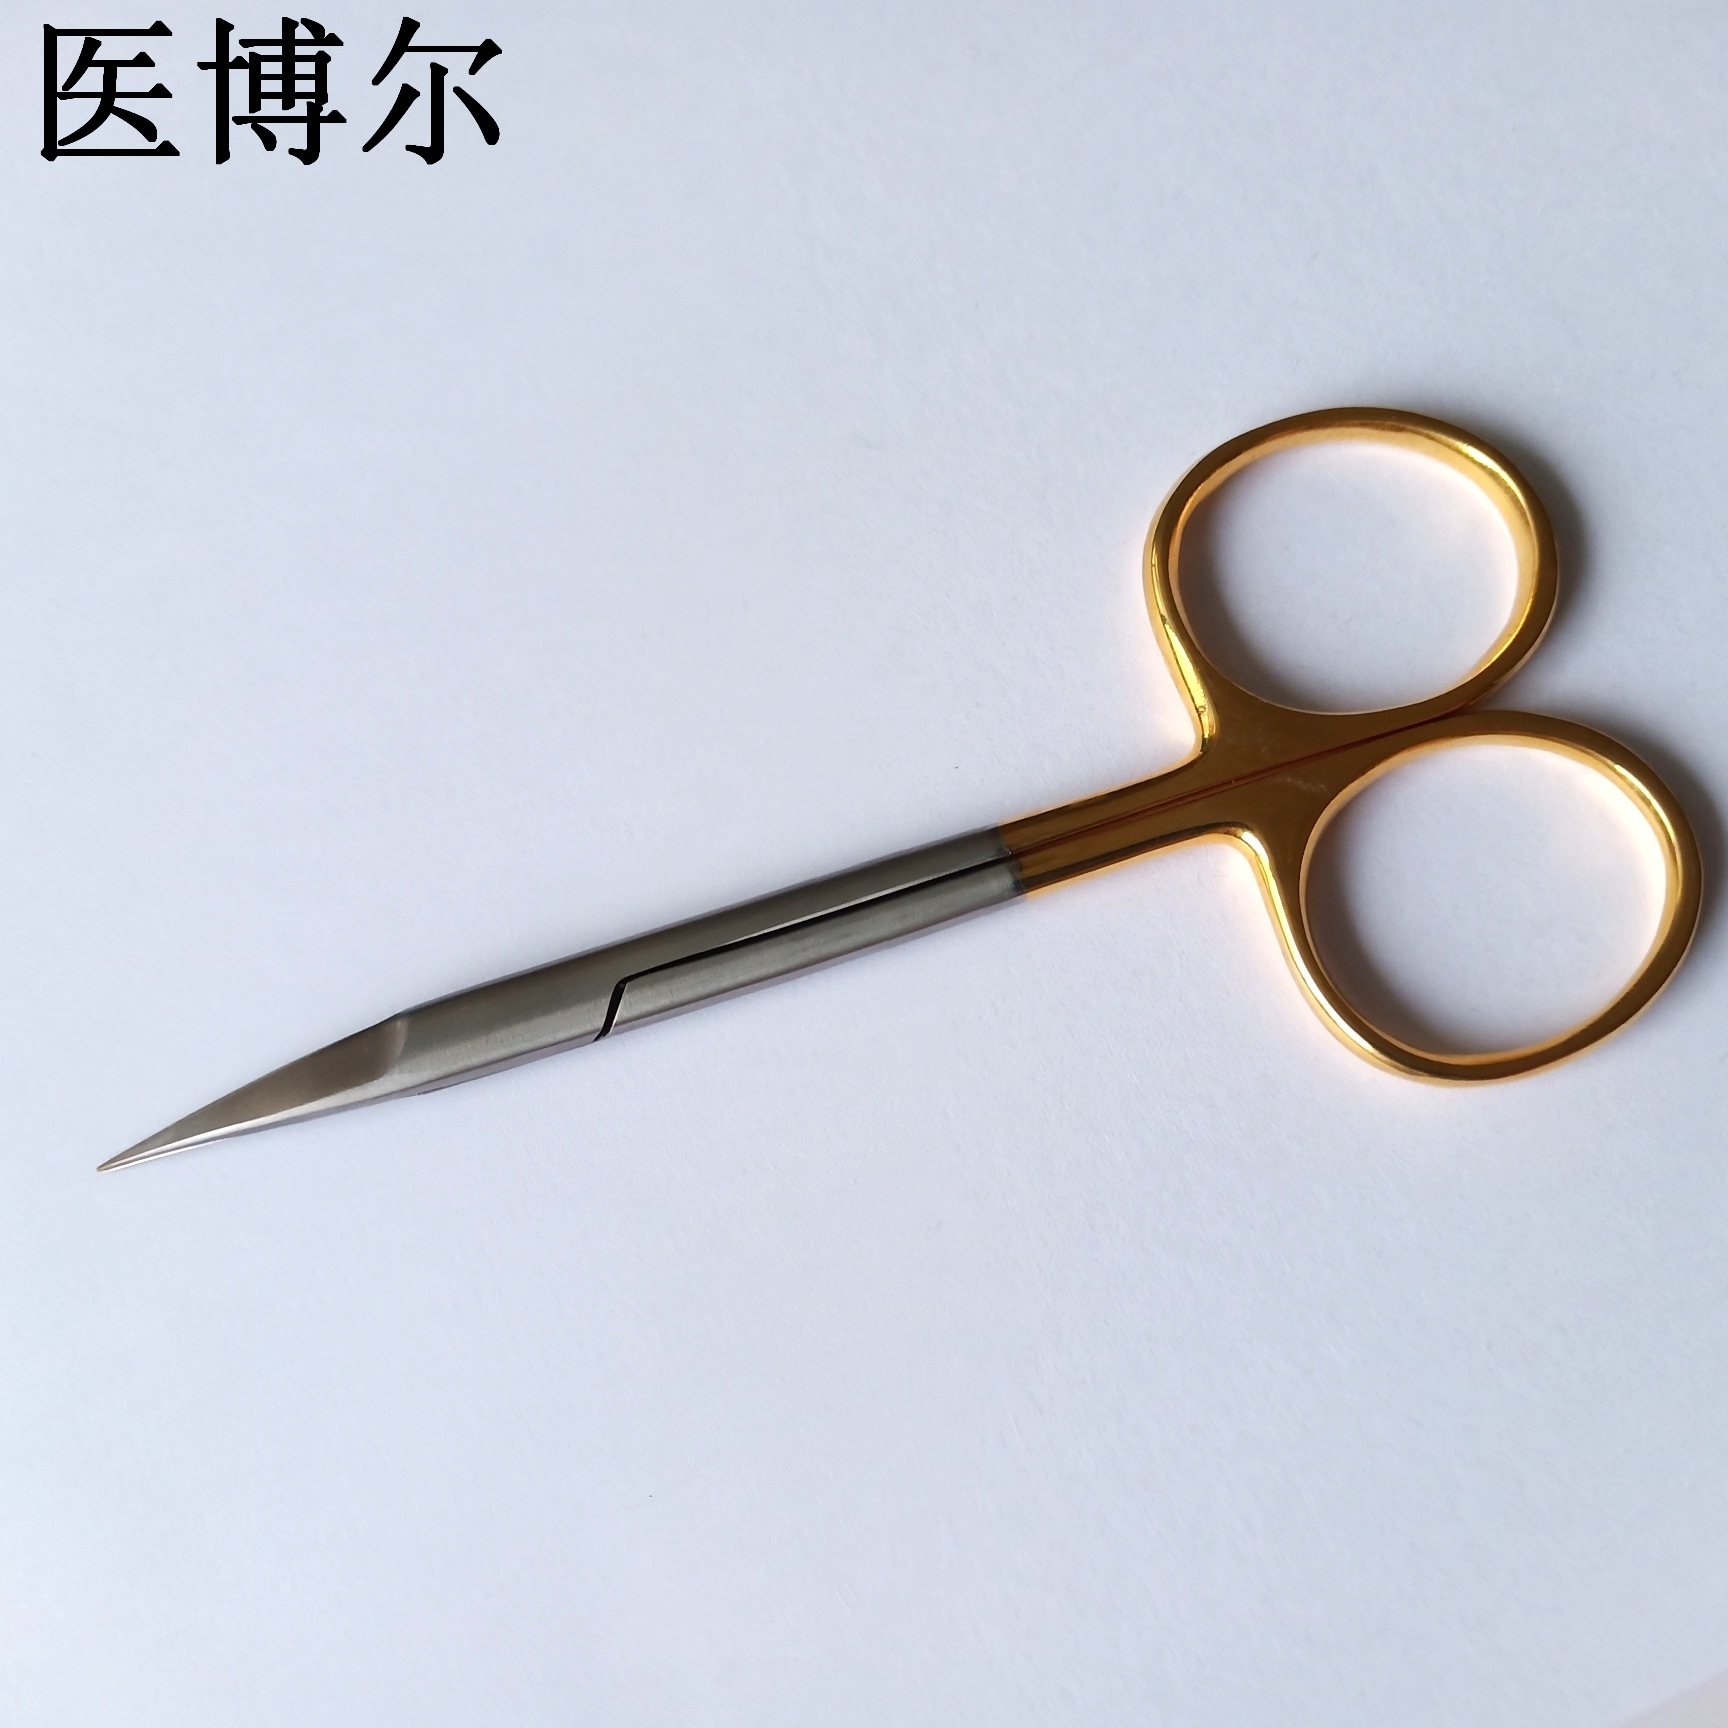 金柄弯尖剪刀9.5cm (1).jpg